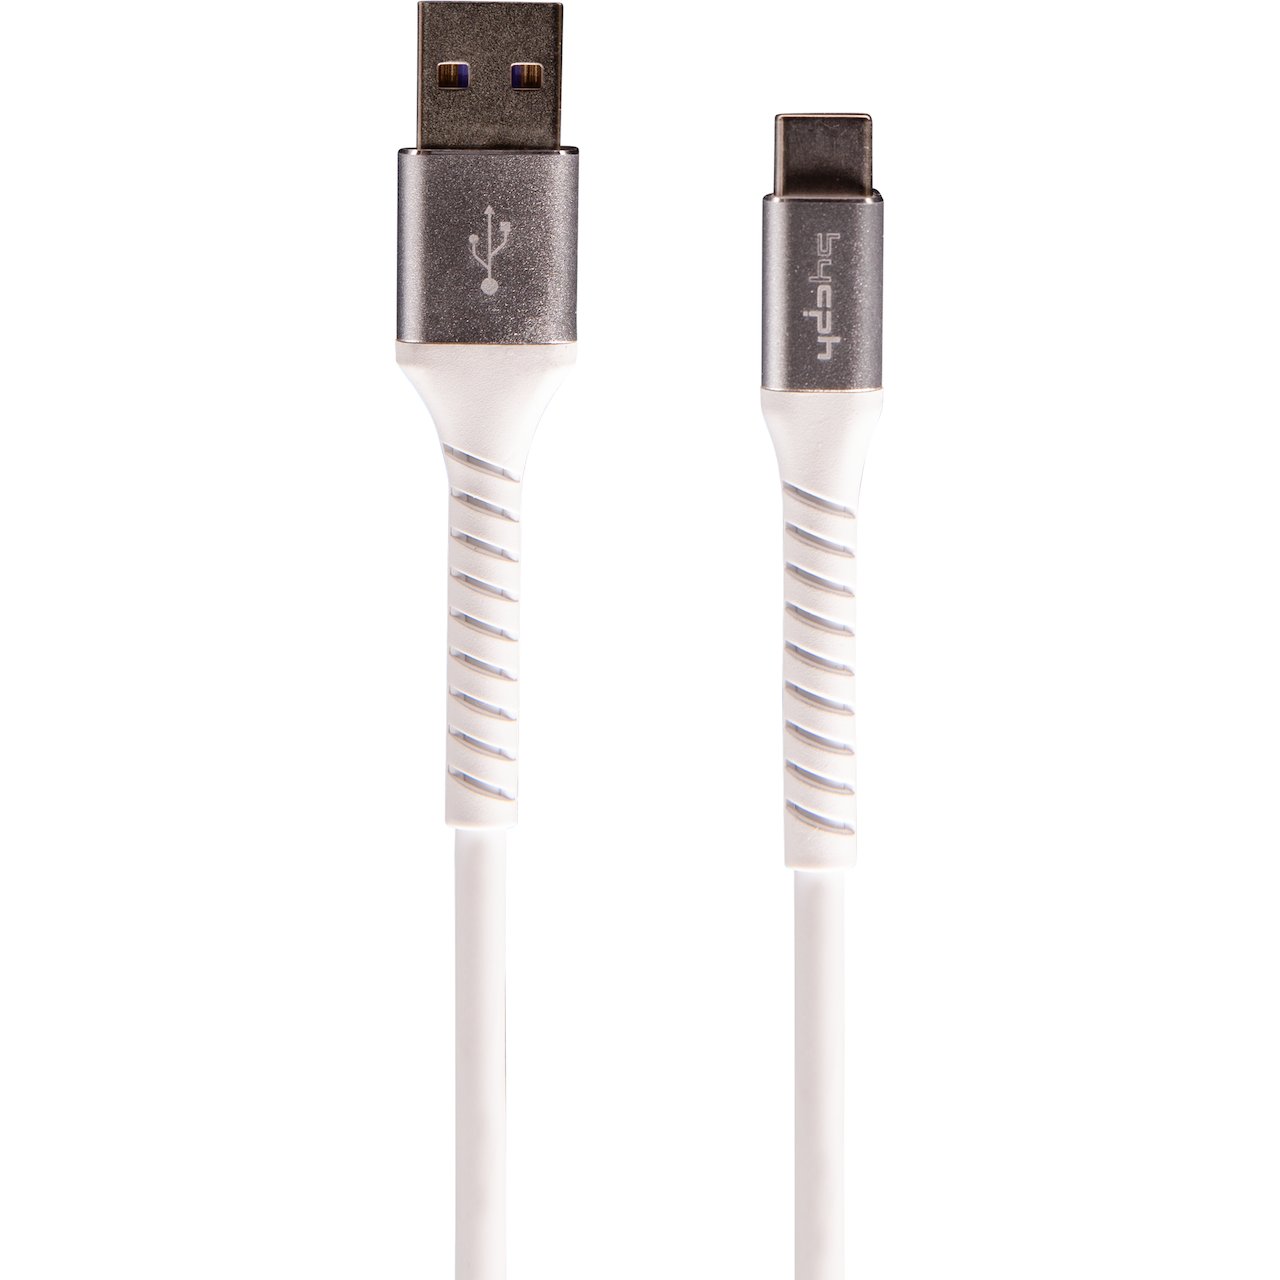 LEKI BYCPH PRO CABLE USB TIL USB C 1.0 M